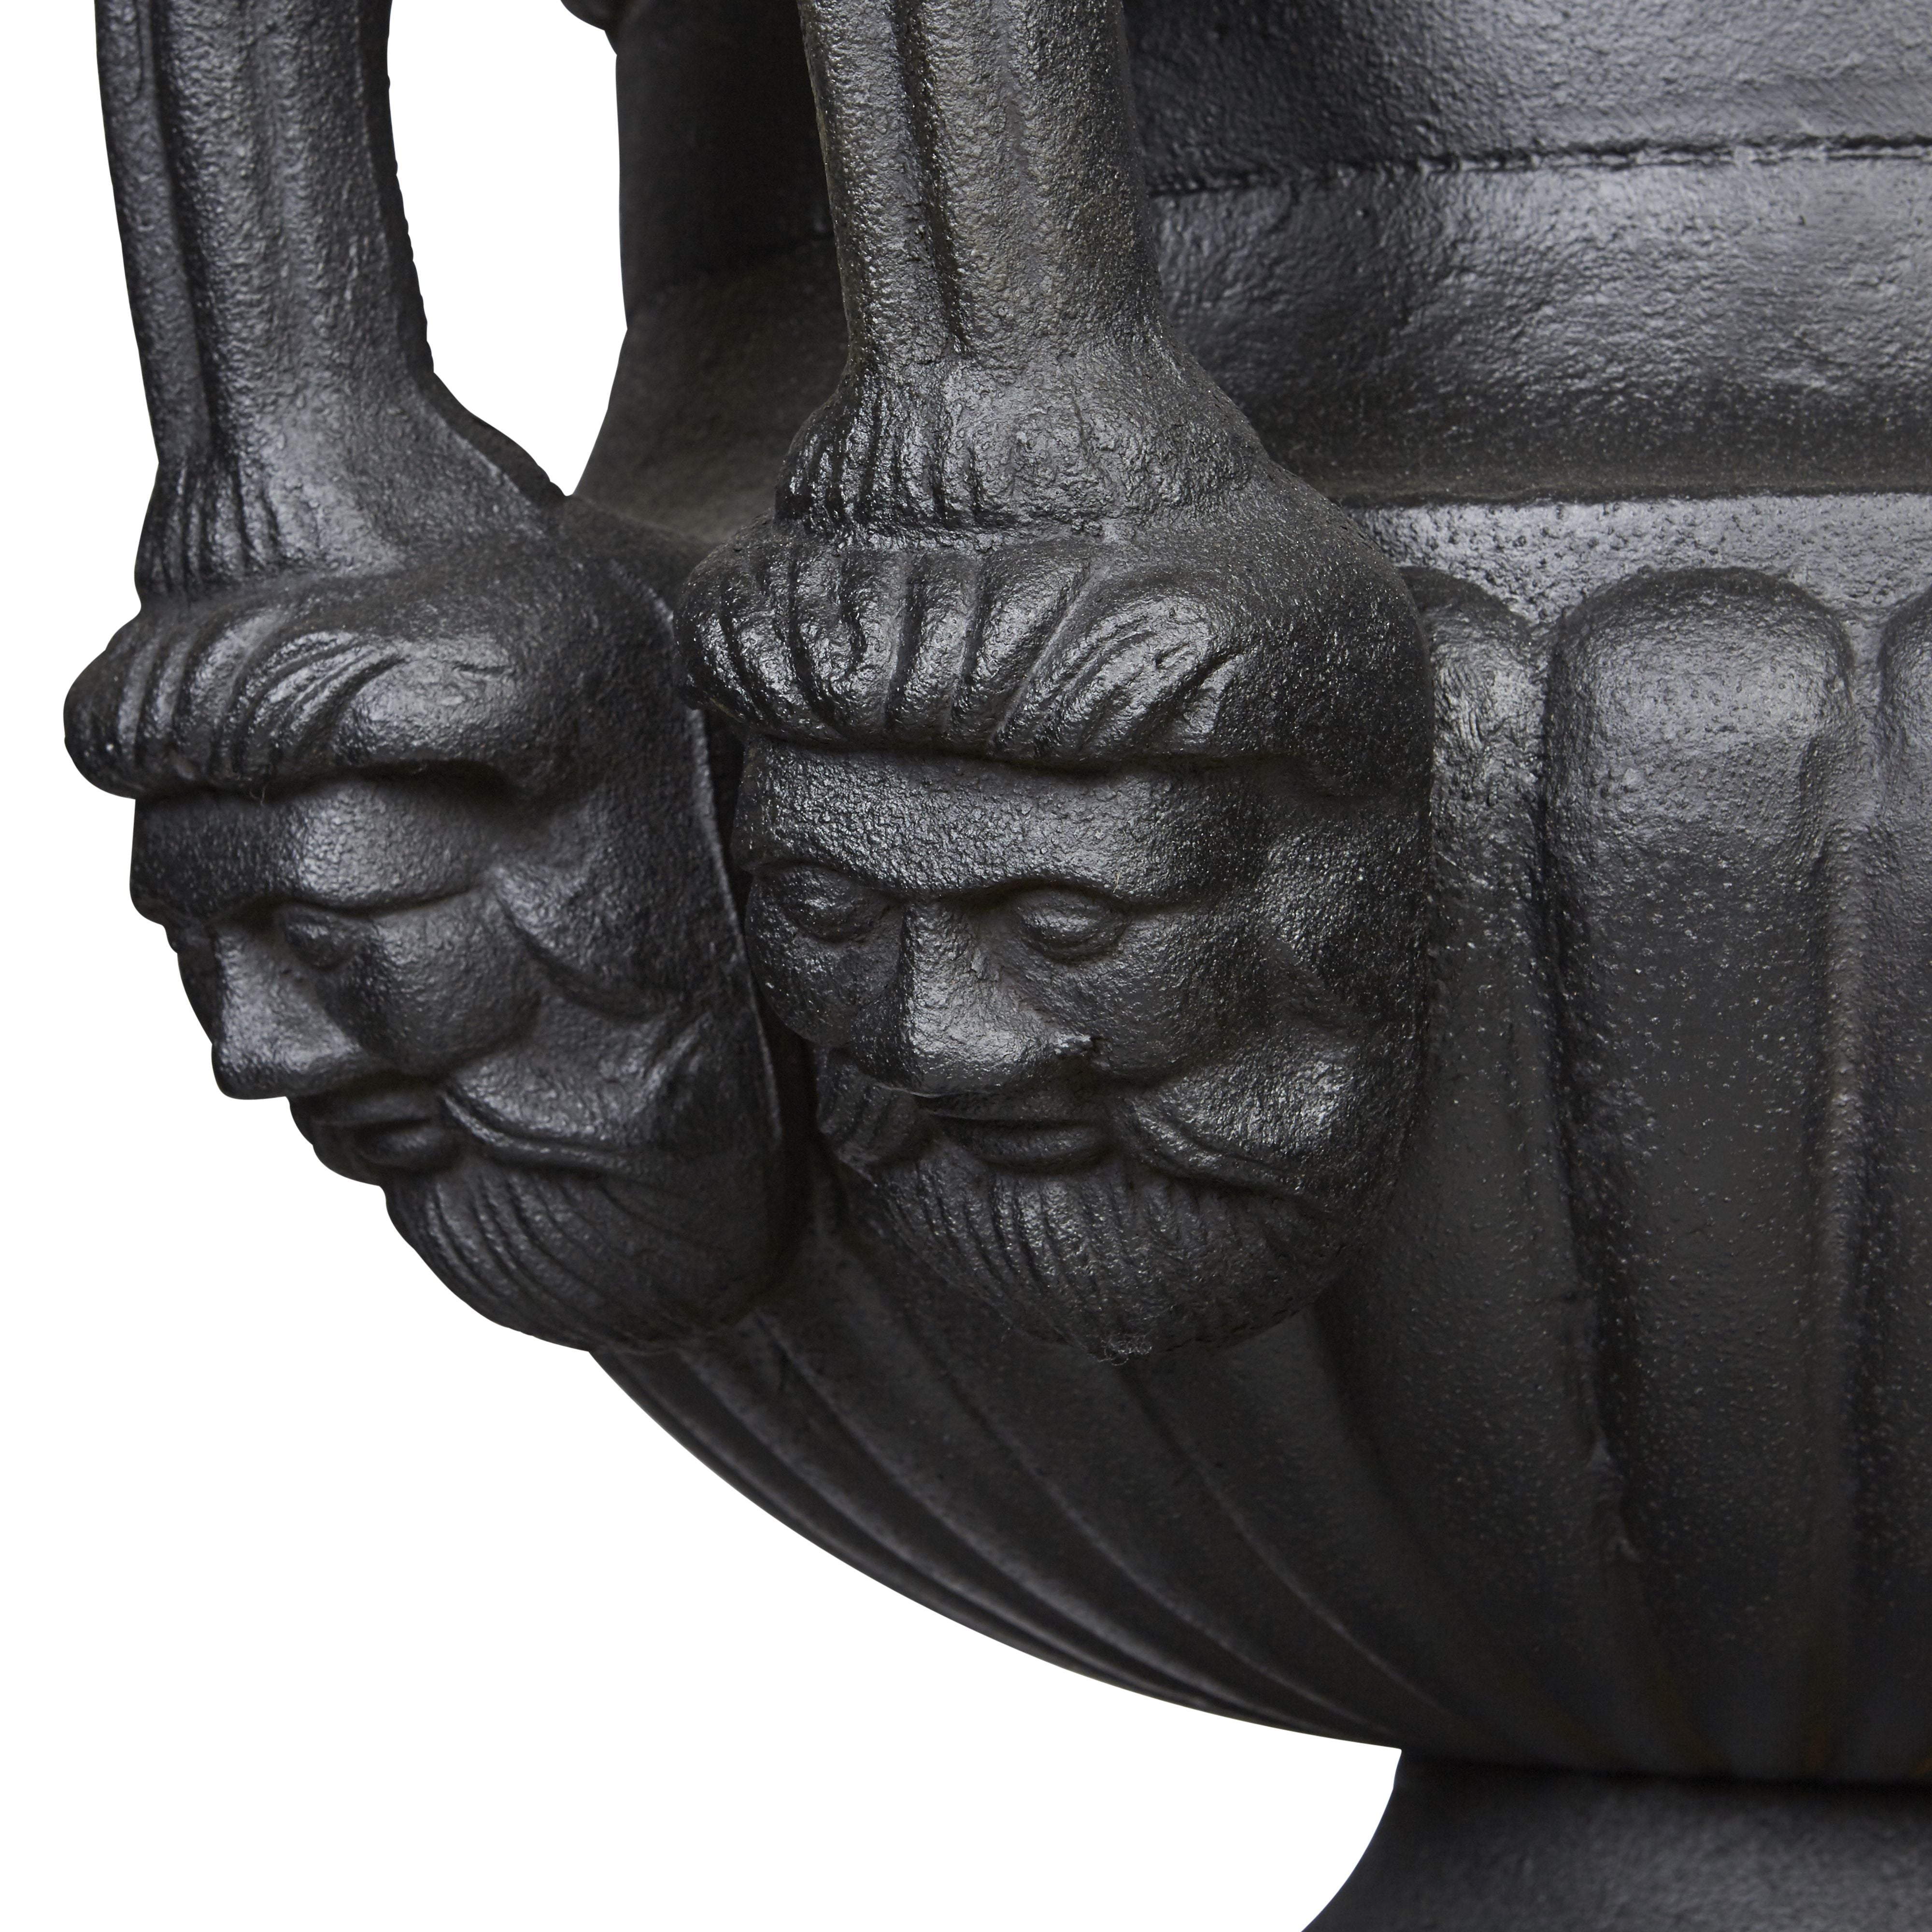 200cm Dorchester Urn and Pedestal Set